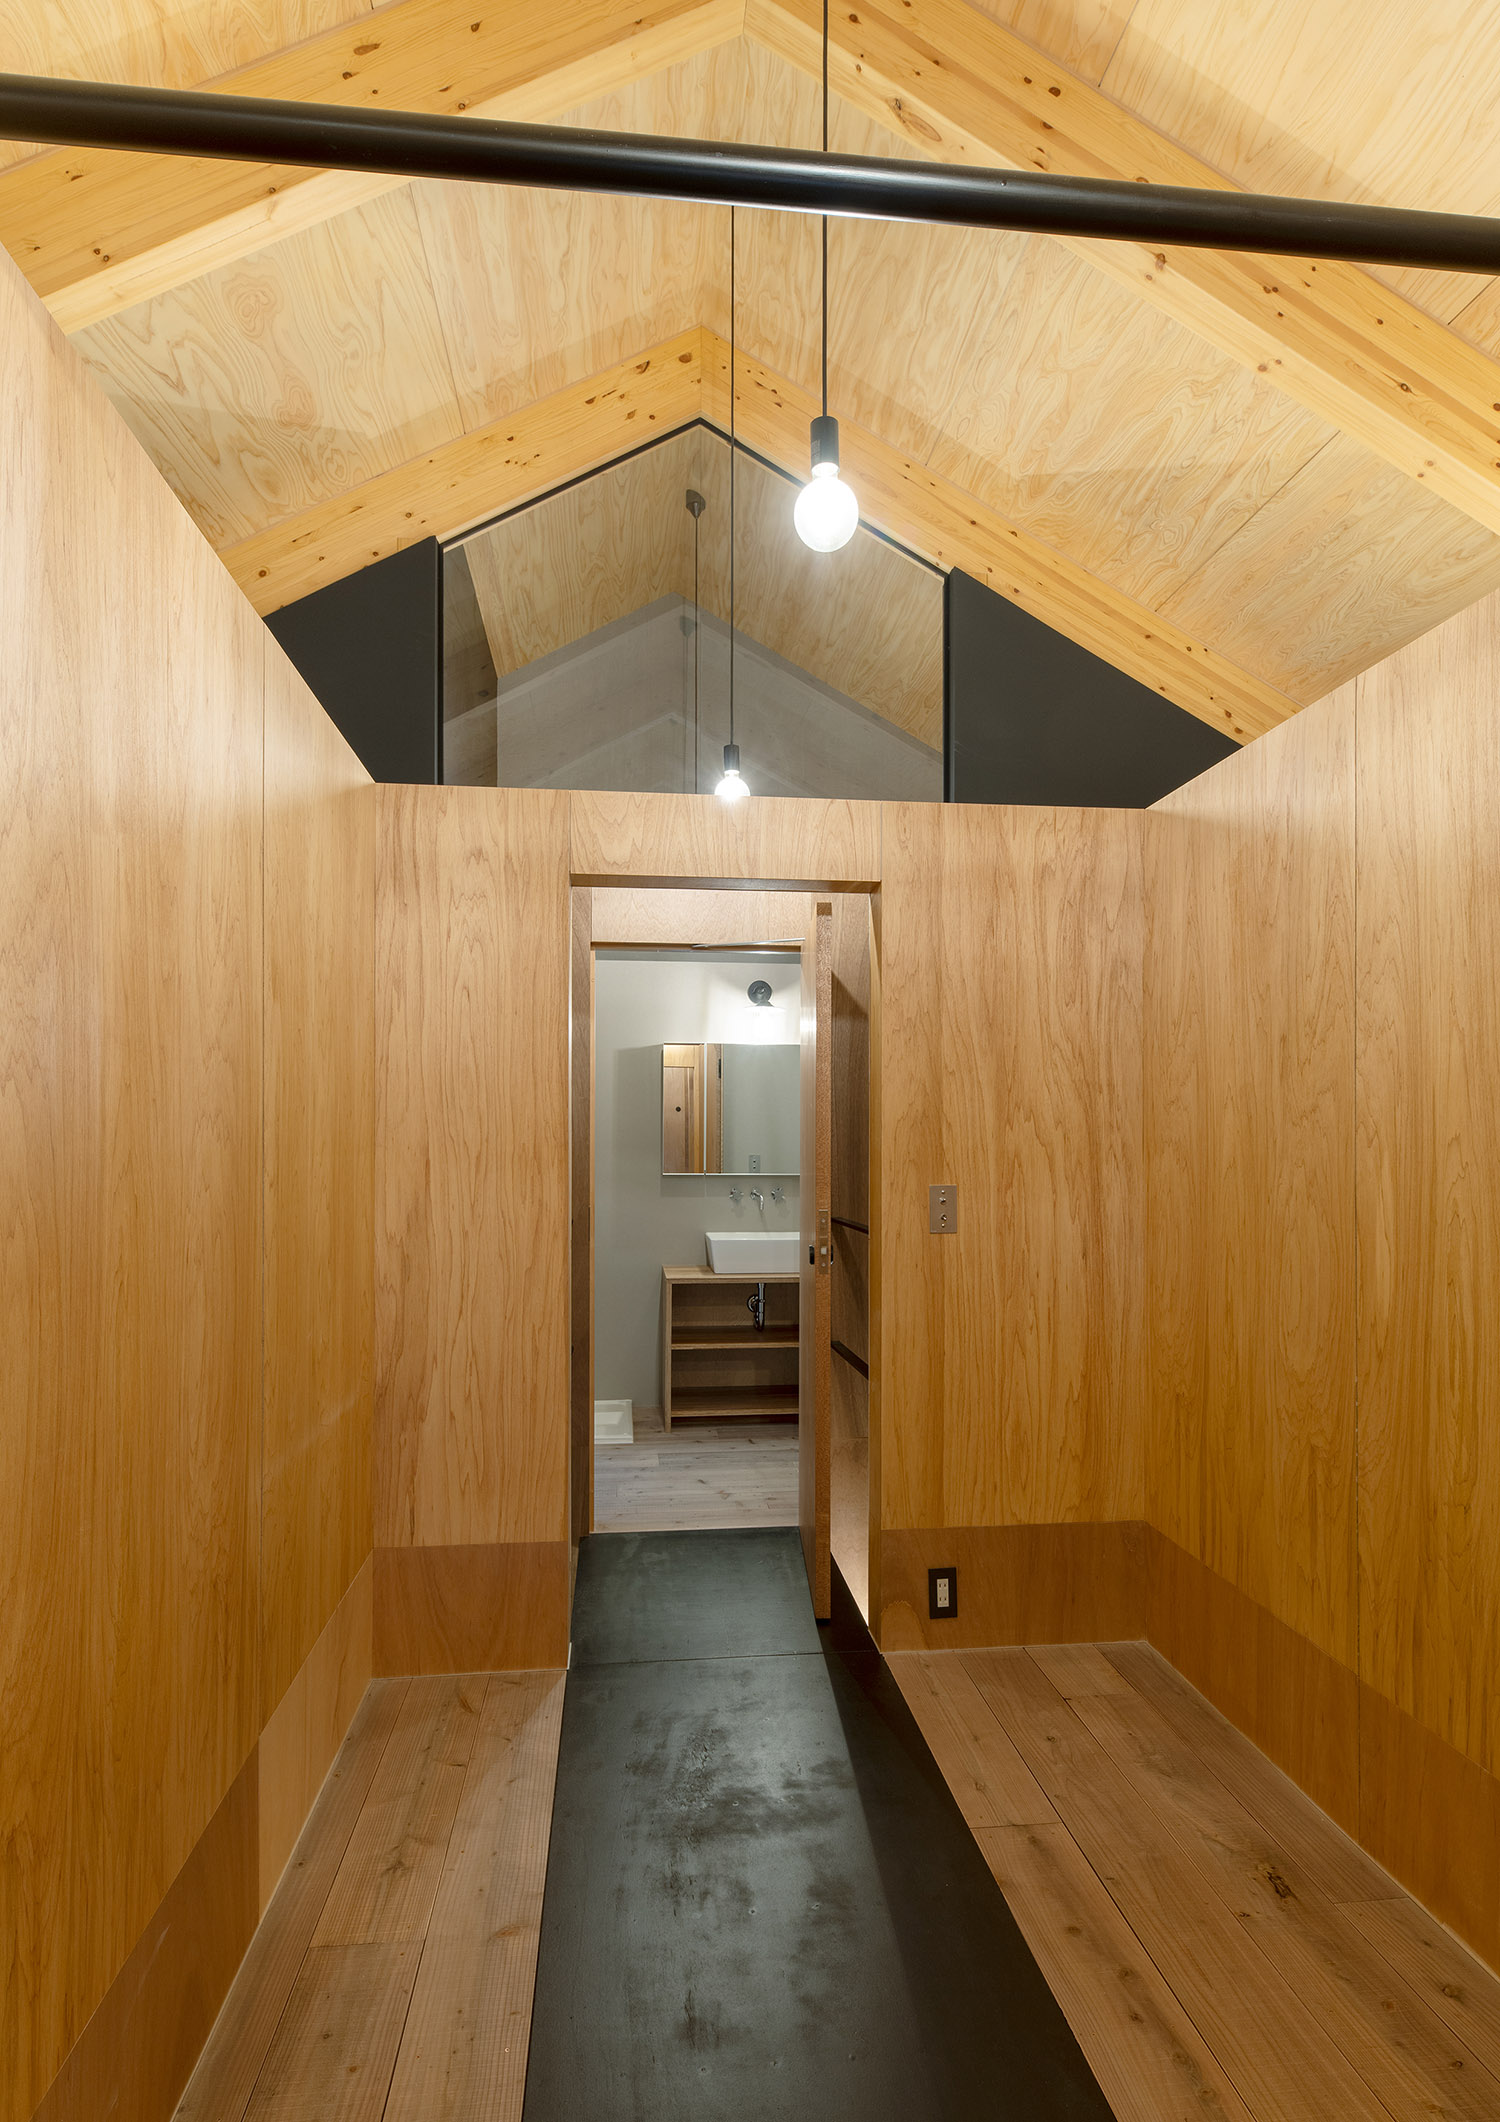 洗面所と繋がる木の三角屋根の空間・デザイン住宅